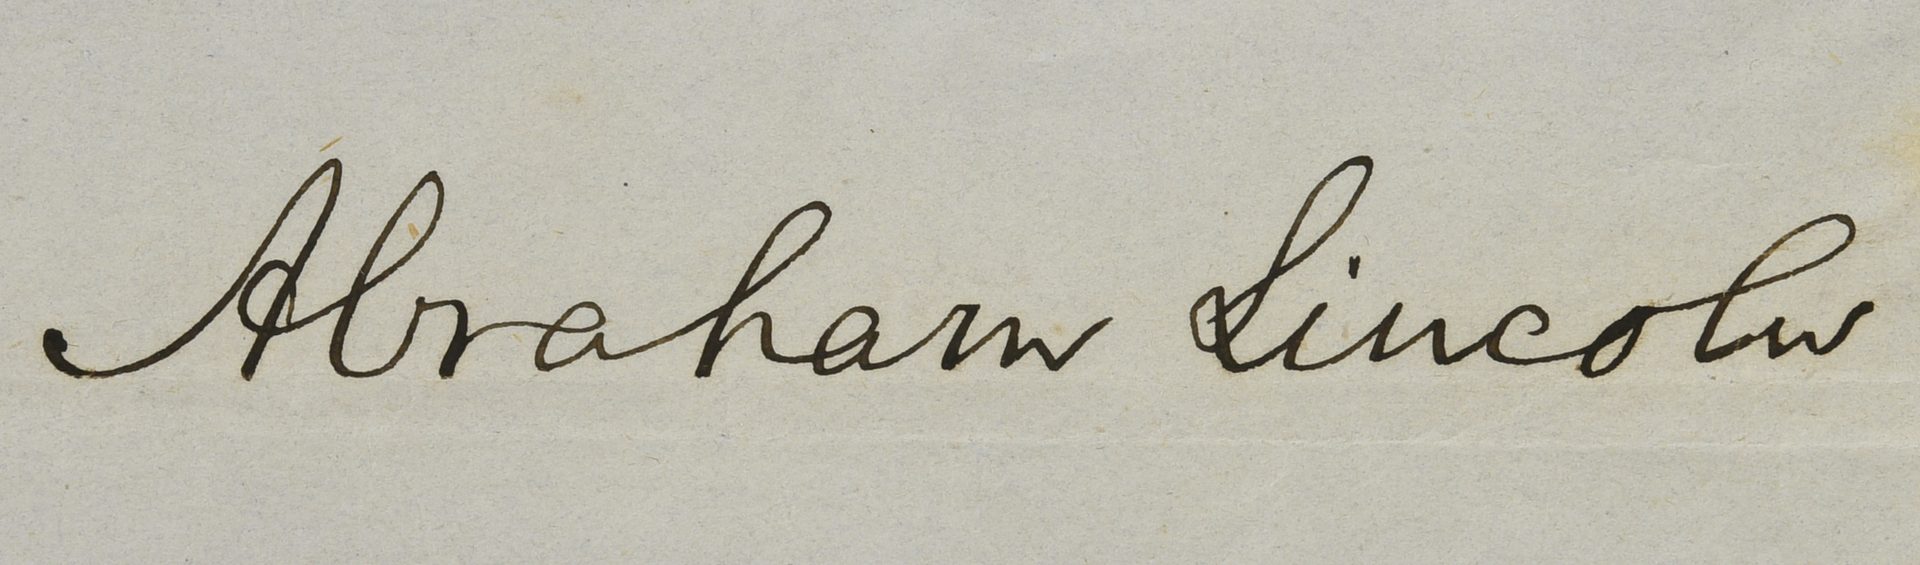 Lot 278: Abraham Lincoln Pardon, Book and Author Autographs